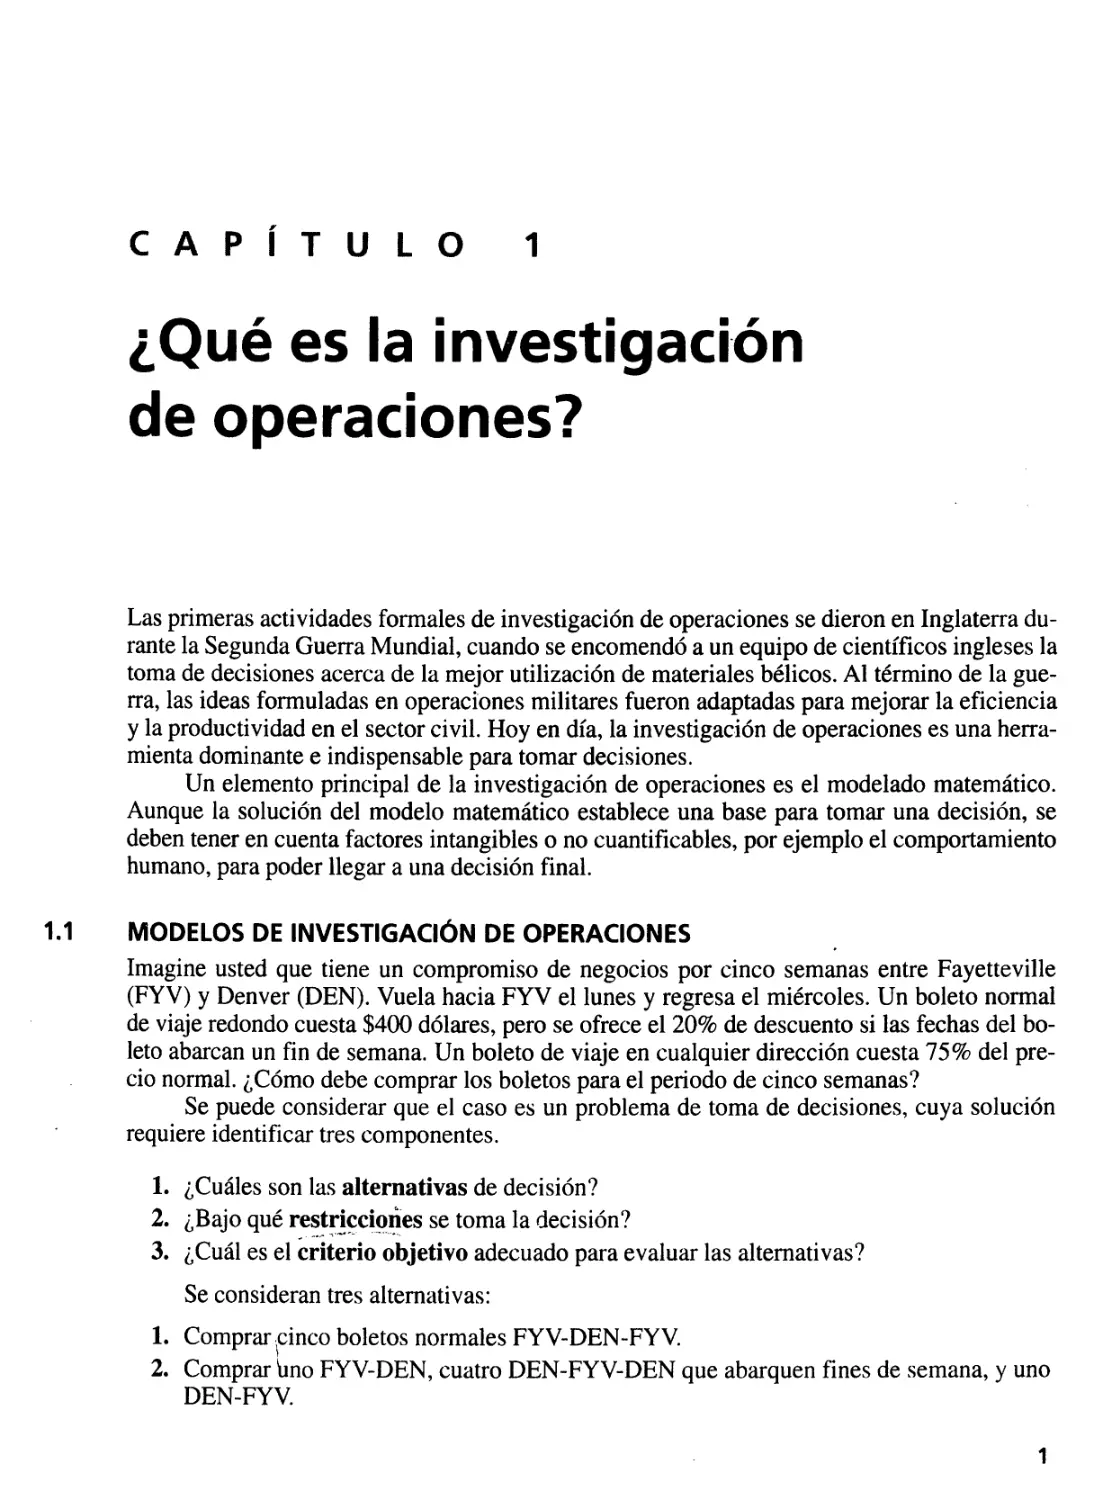 1. ¿Qué es la investigación de operaciones?